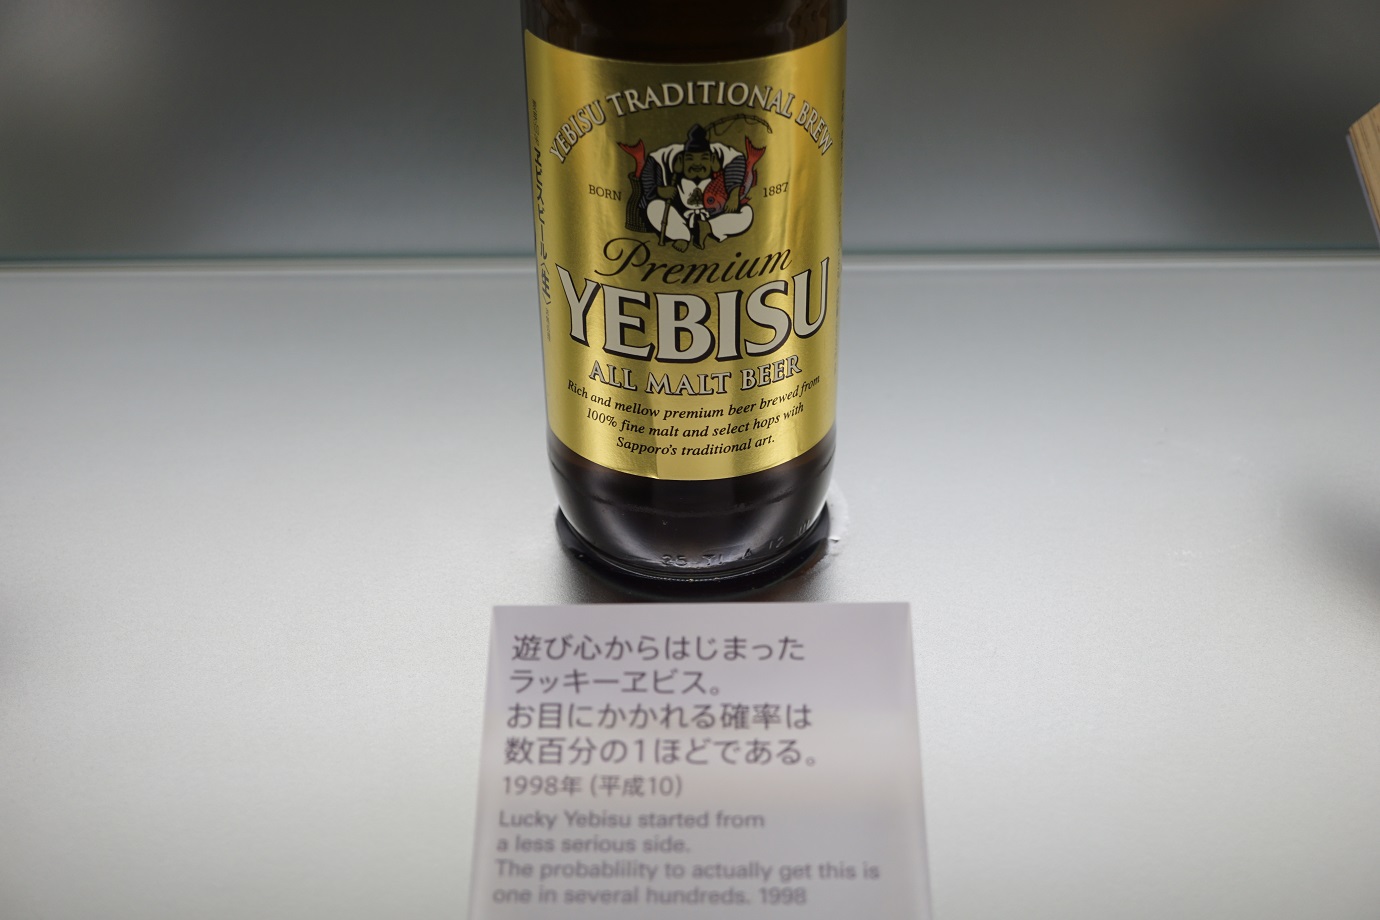 ヱビスビール記念館(Yebis beer kinen kan) – 水波の隔て(Suiha no Hedate)